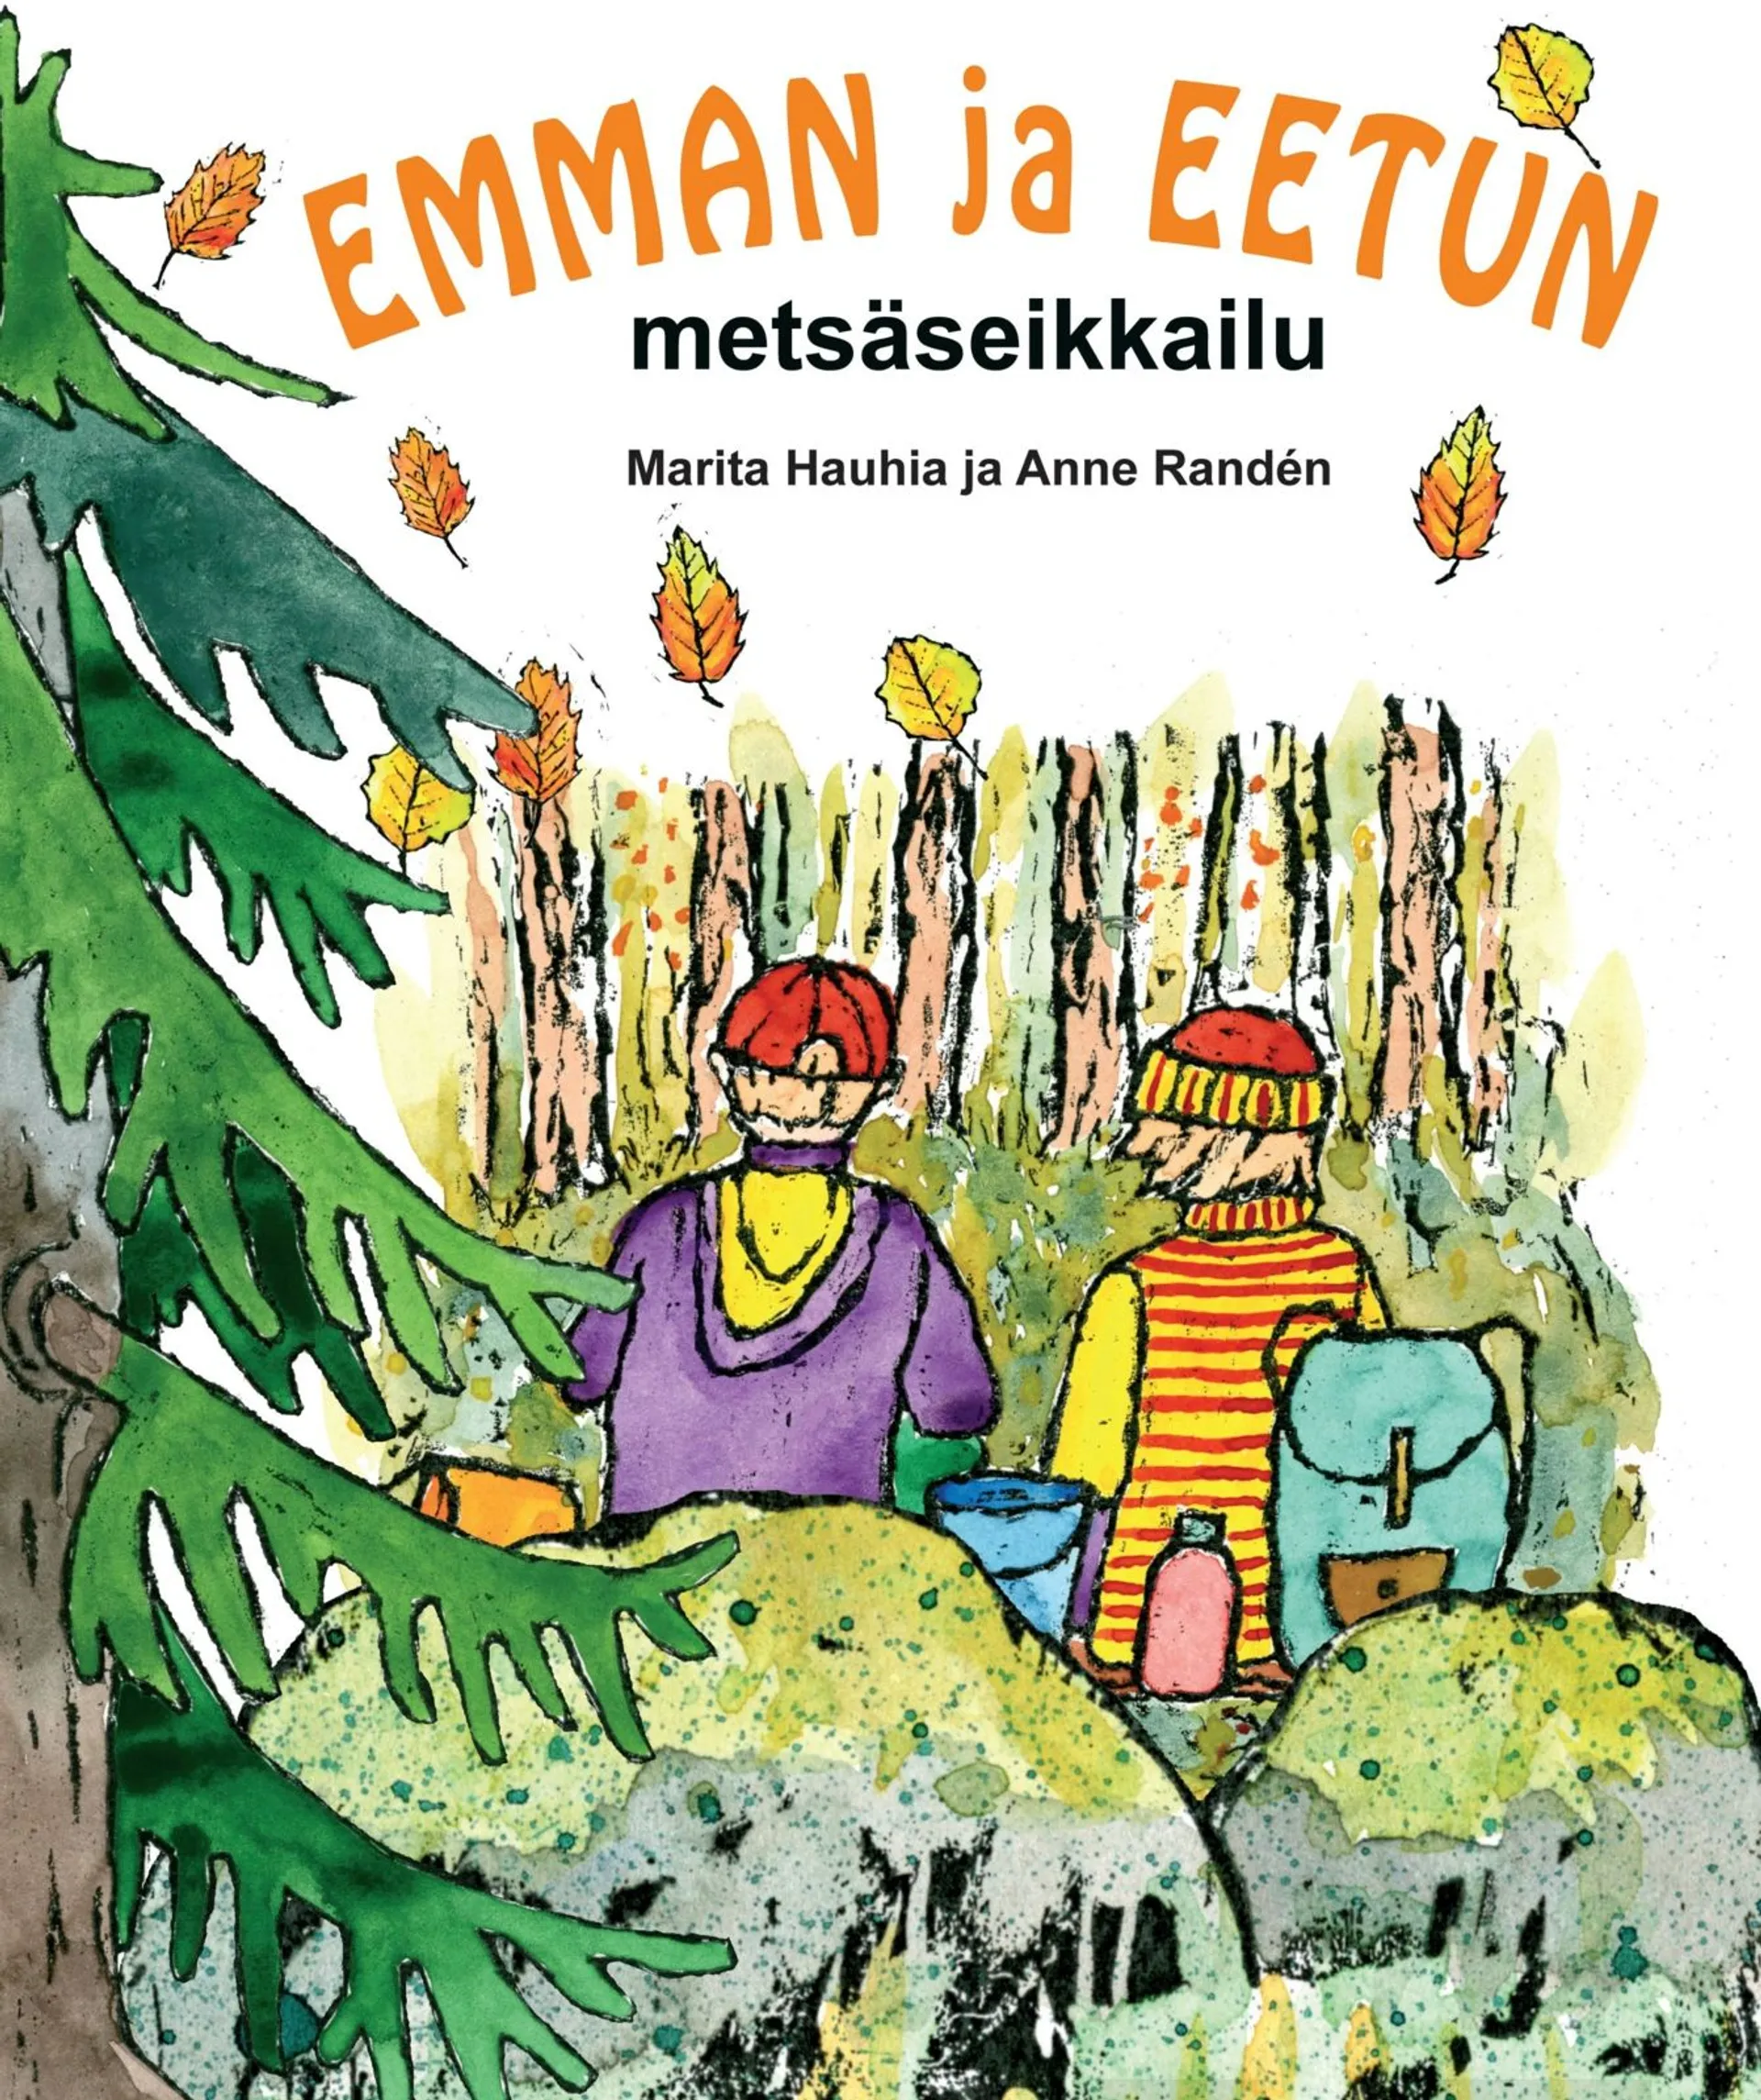 Hauhia, Emman ja Eetun metsäseikkailu